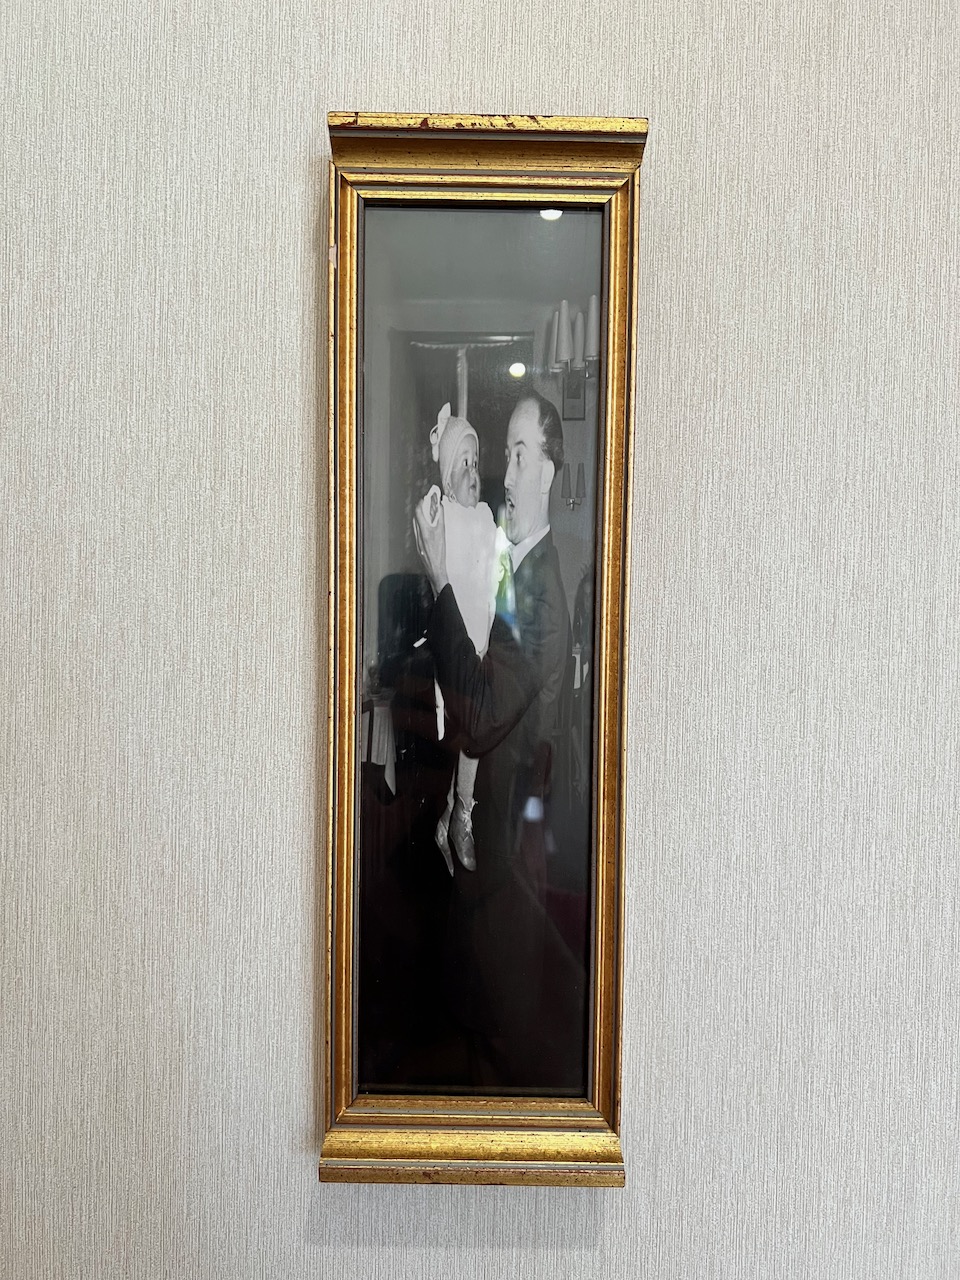 Au mur, une photo de famille est, elle-aussi, déformée